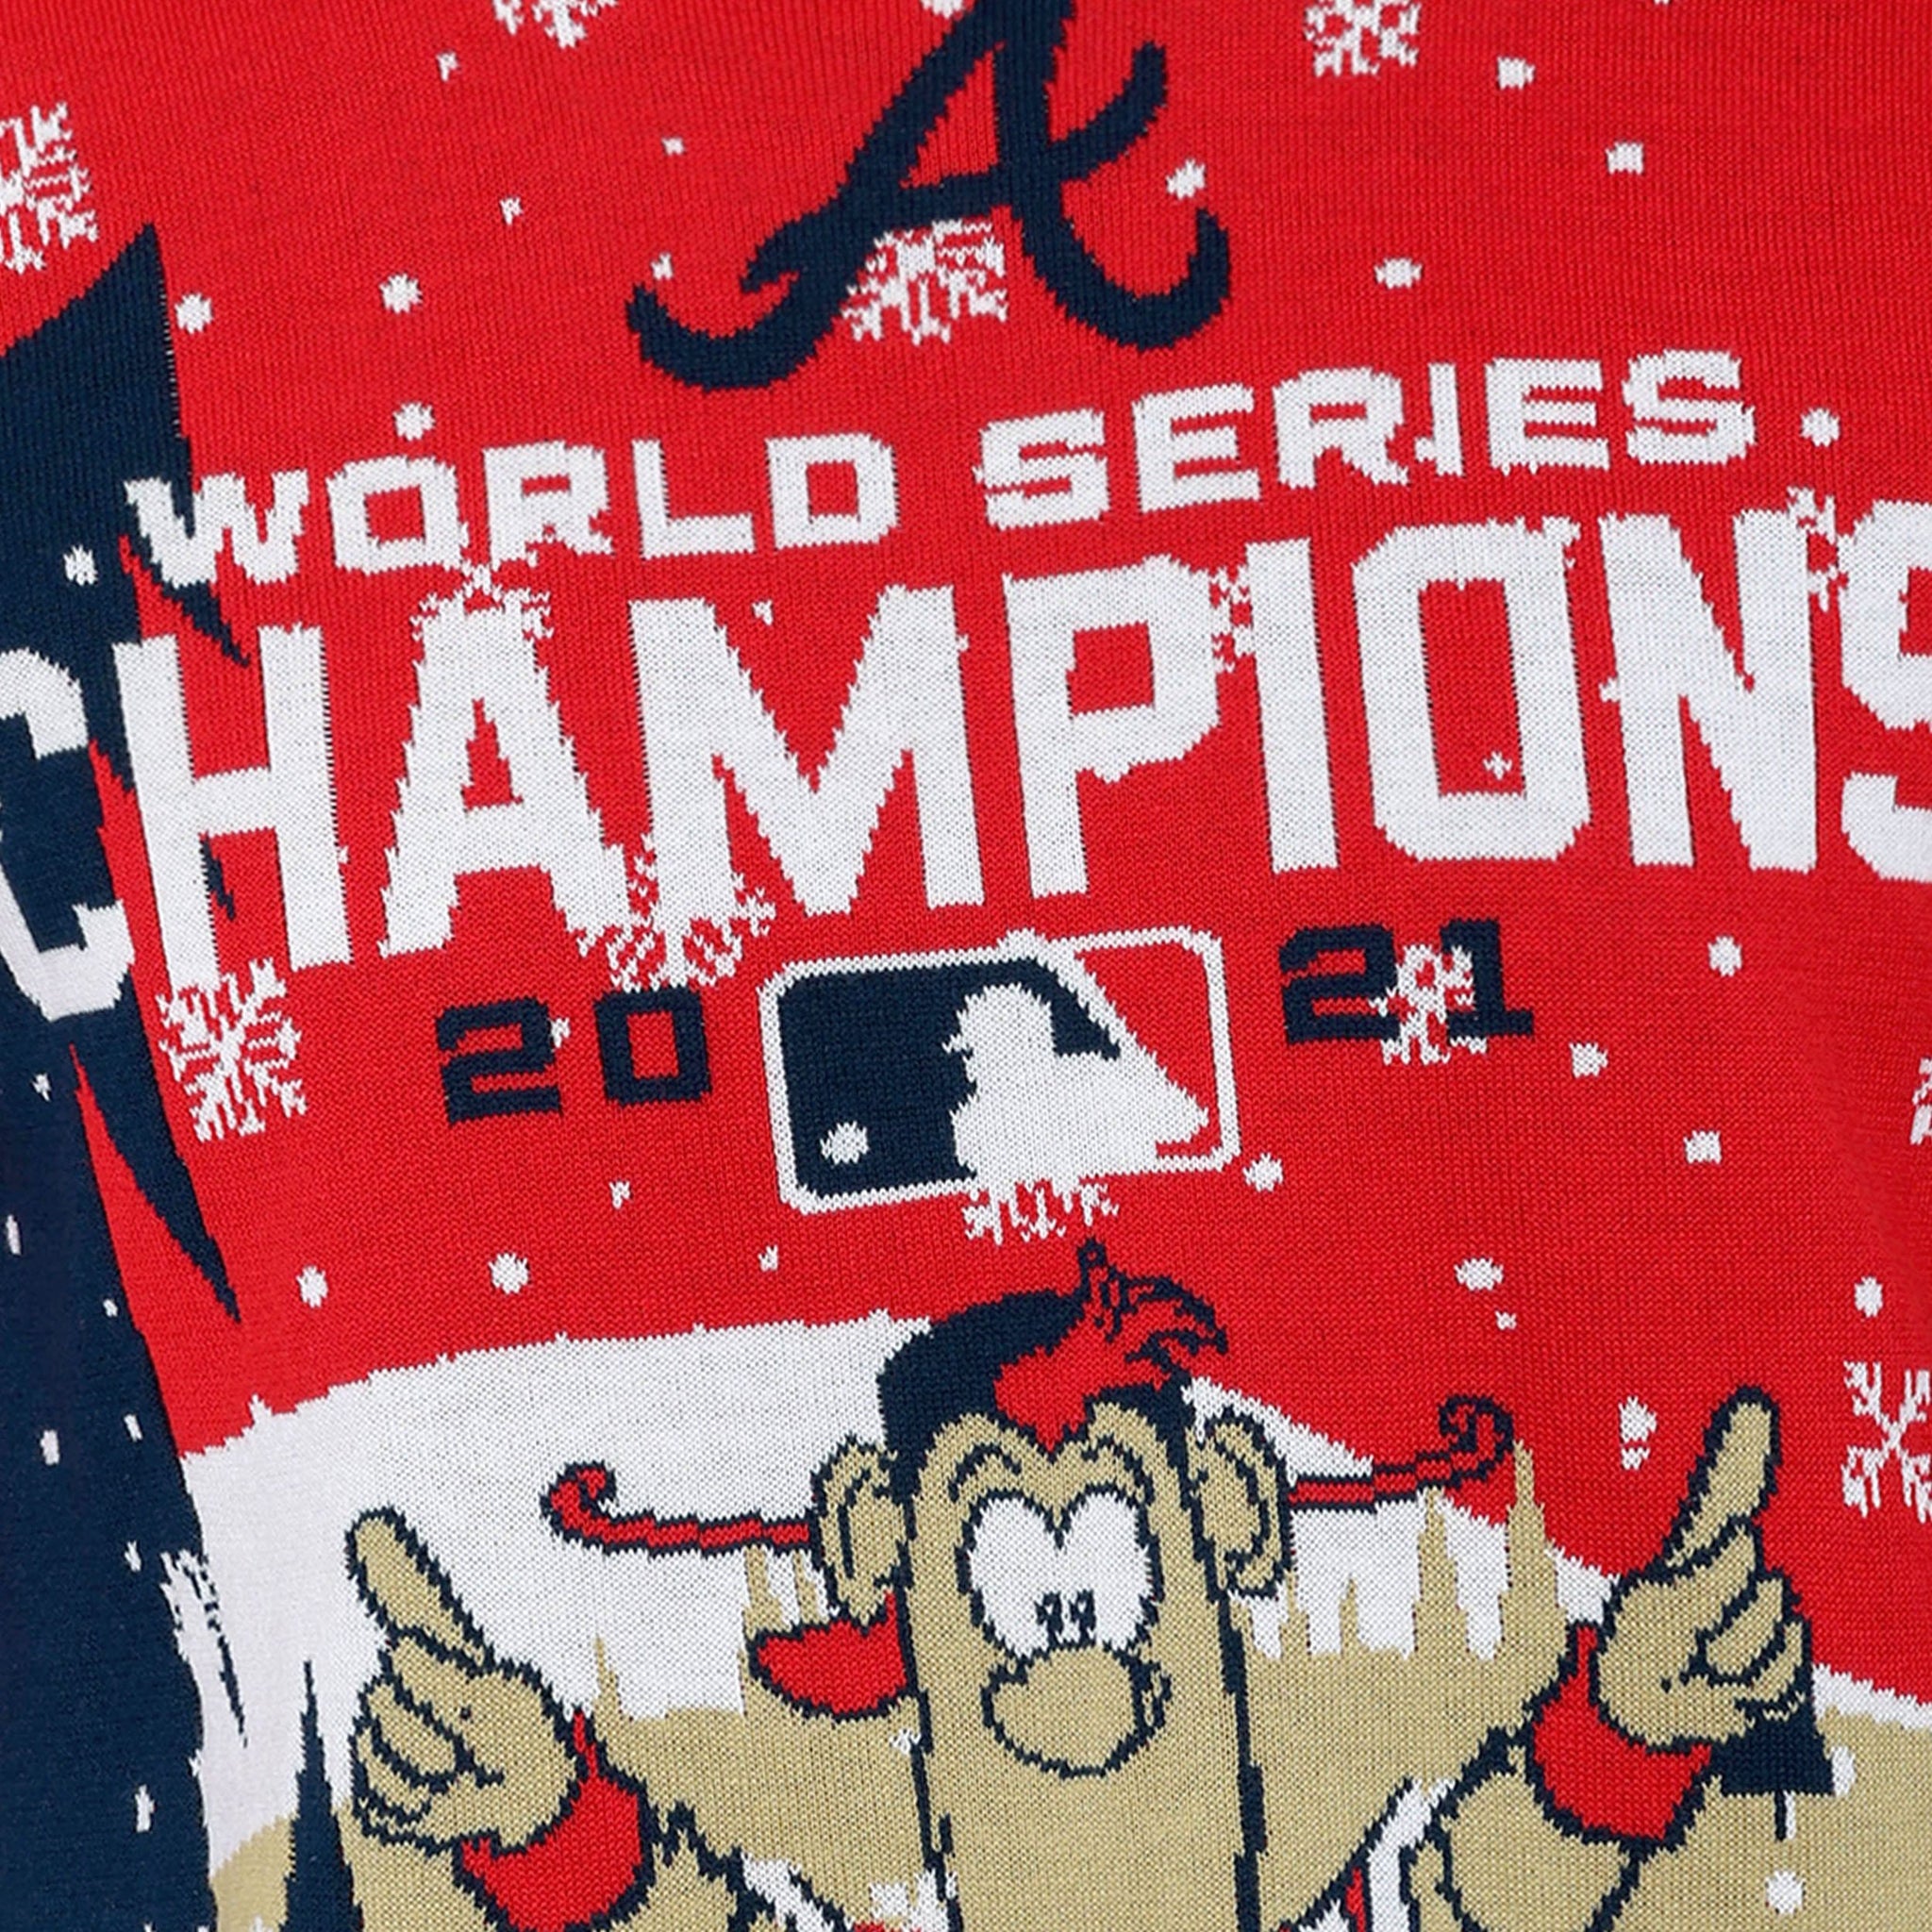 Atlanta Braves Teams Baseball 2021 World Series Champions Shirt